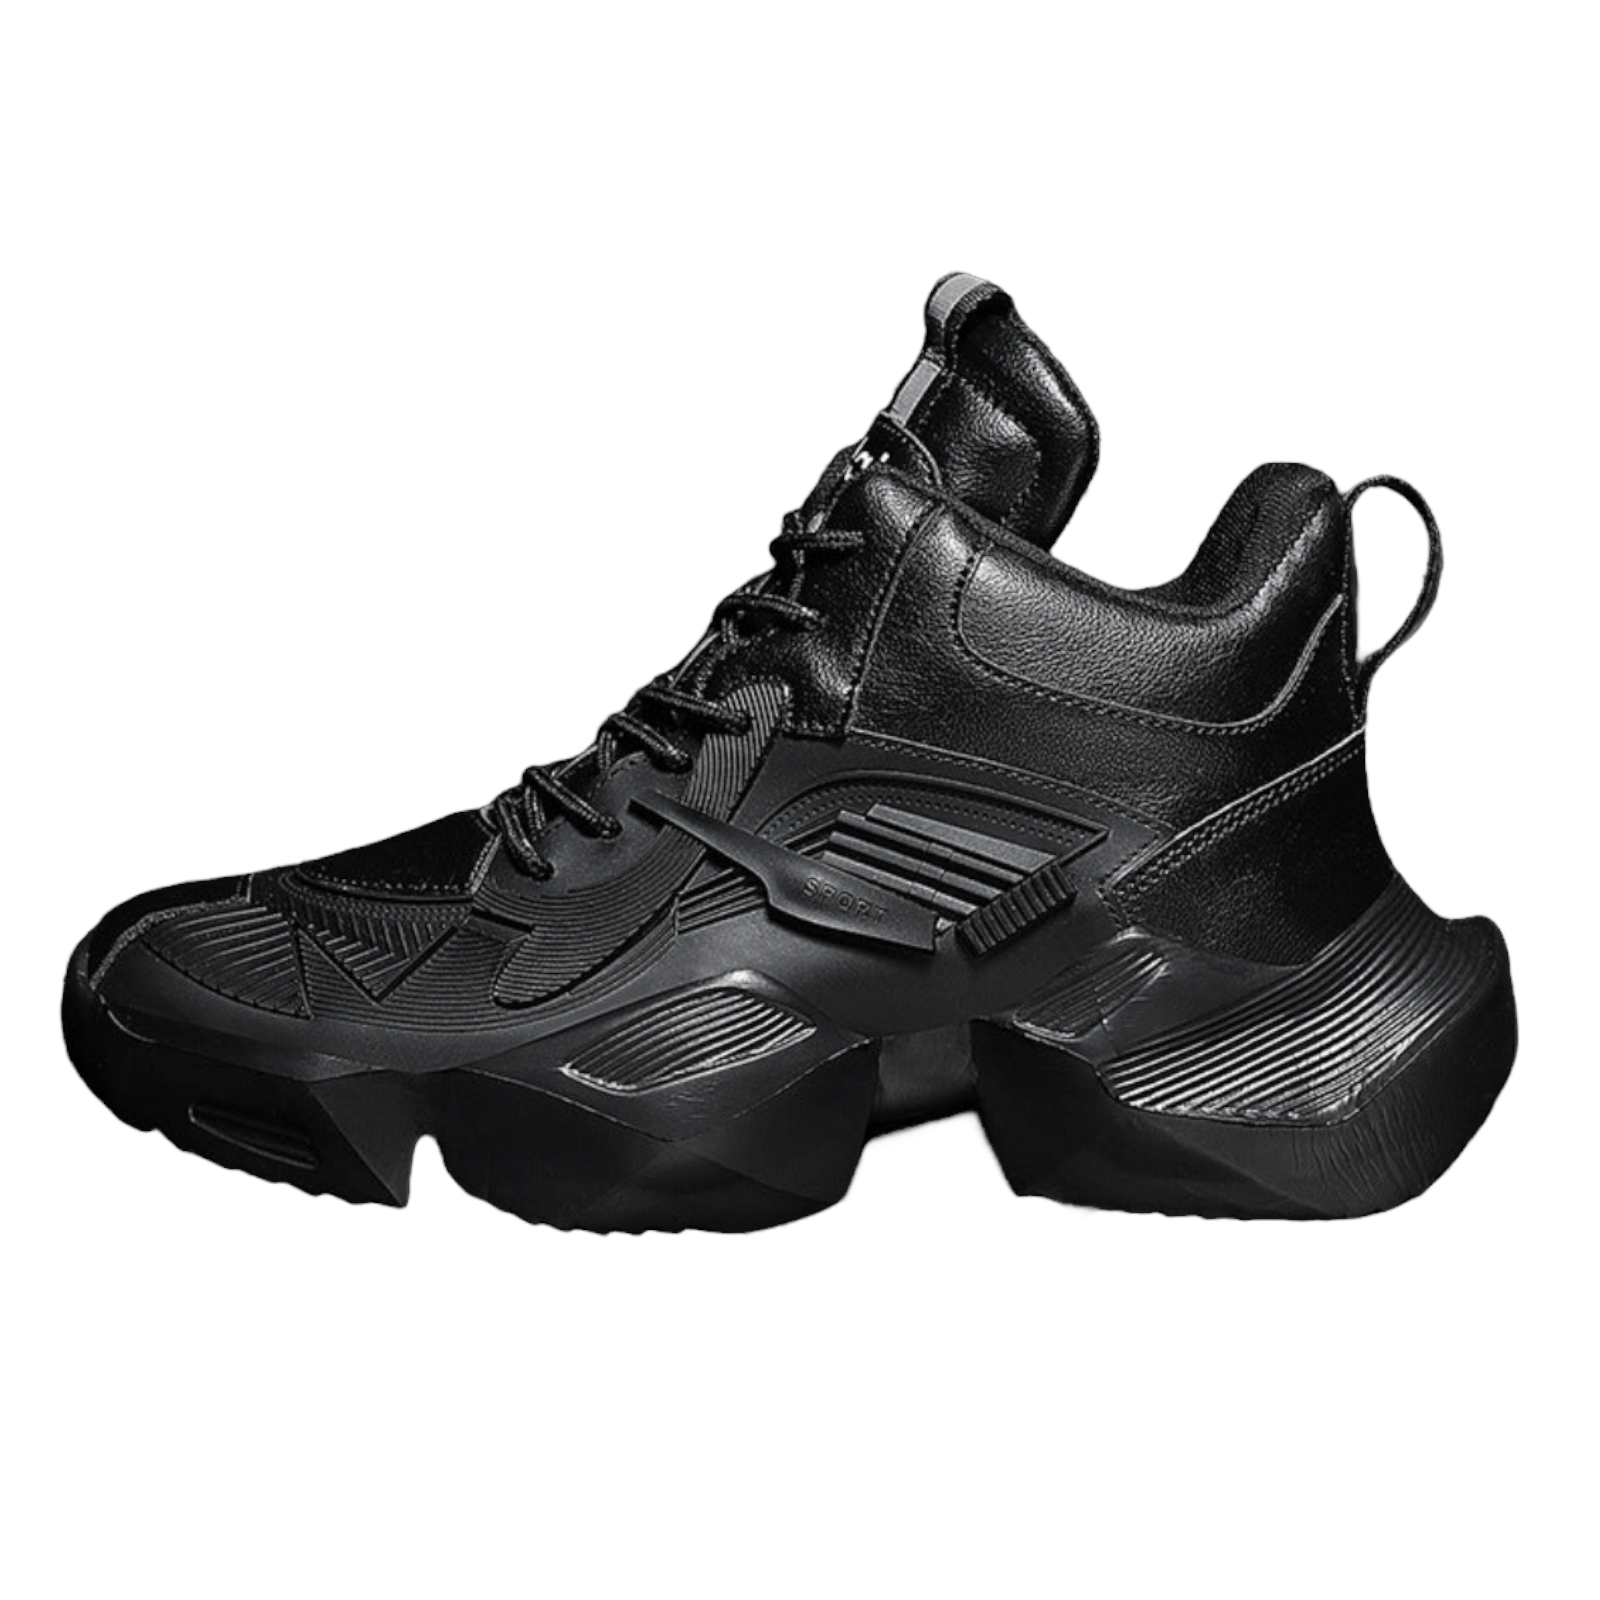 black shoes aquiles sport flashlander left side